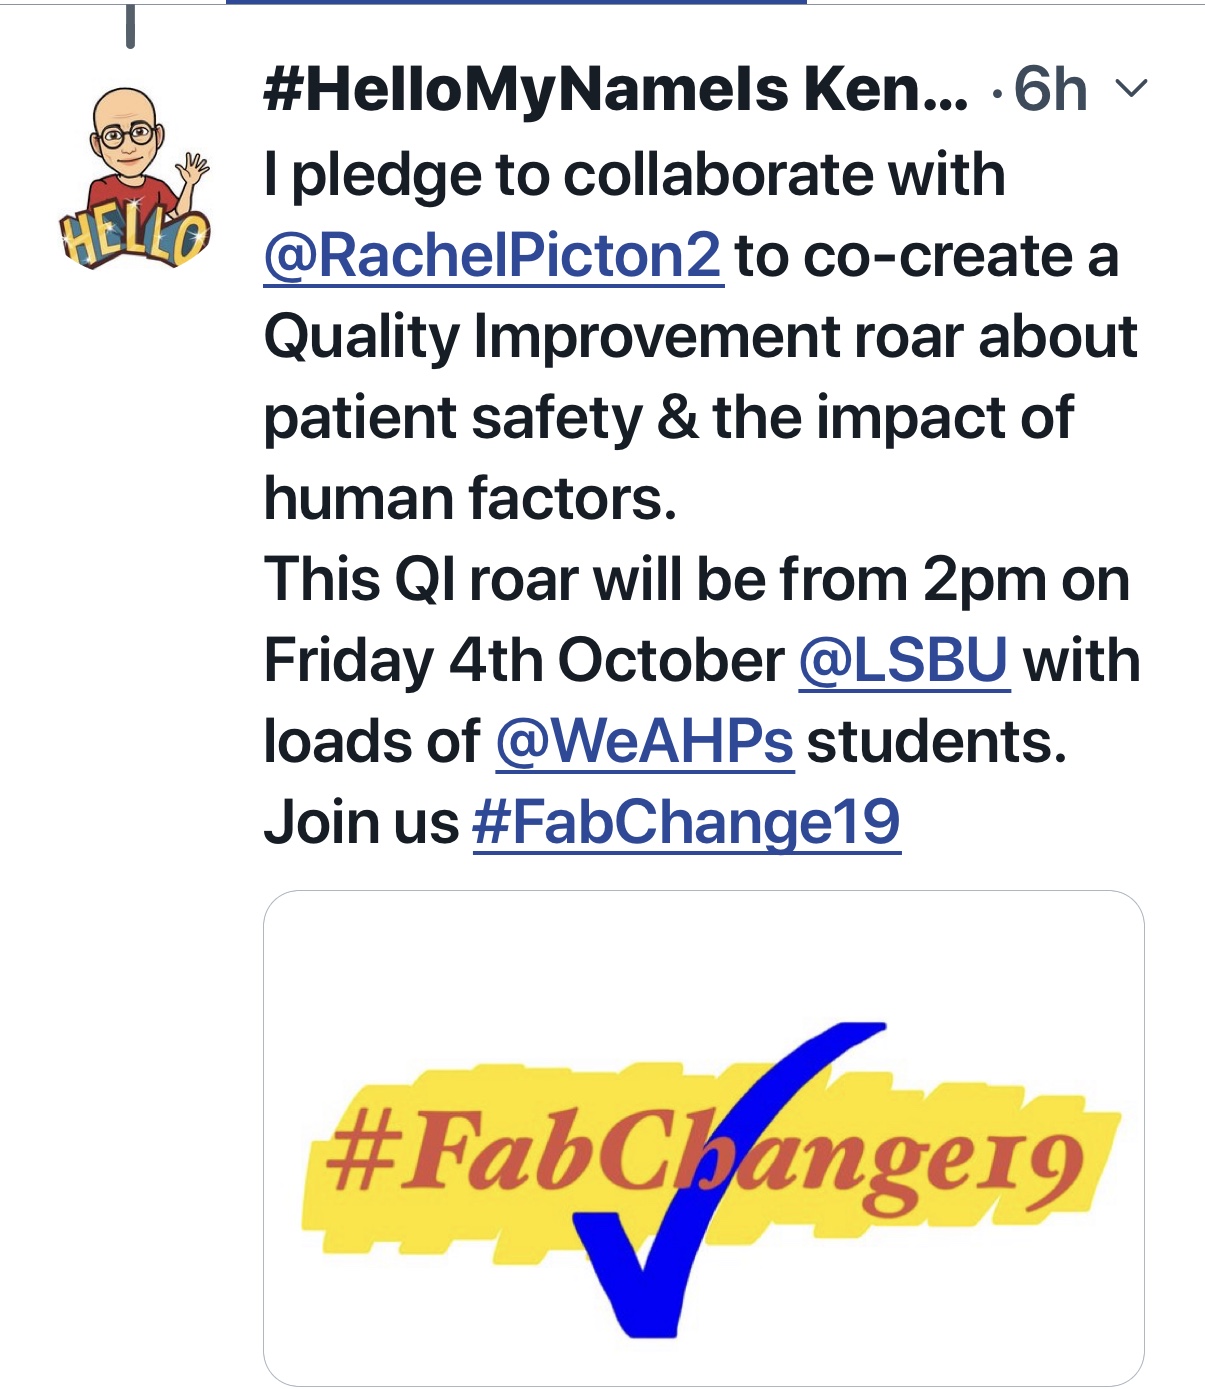 #FabChange19 Pledge QI Patient Safety roar featured image